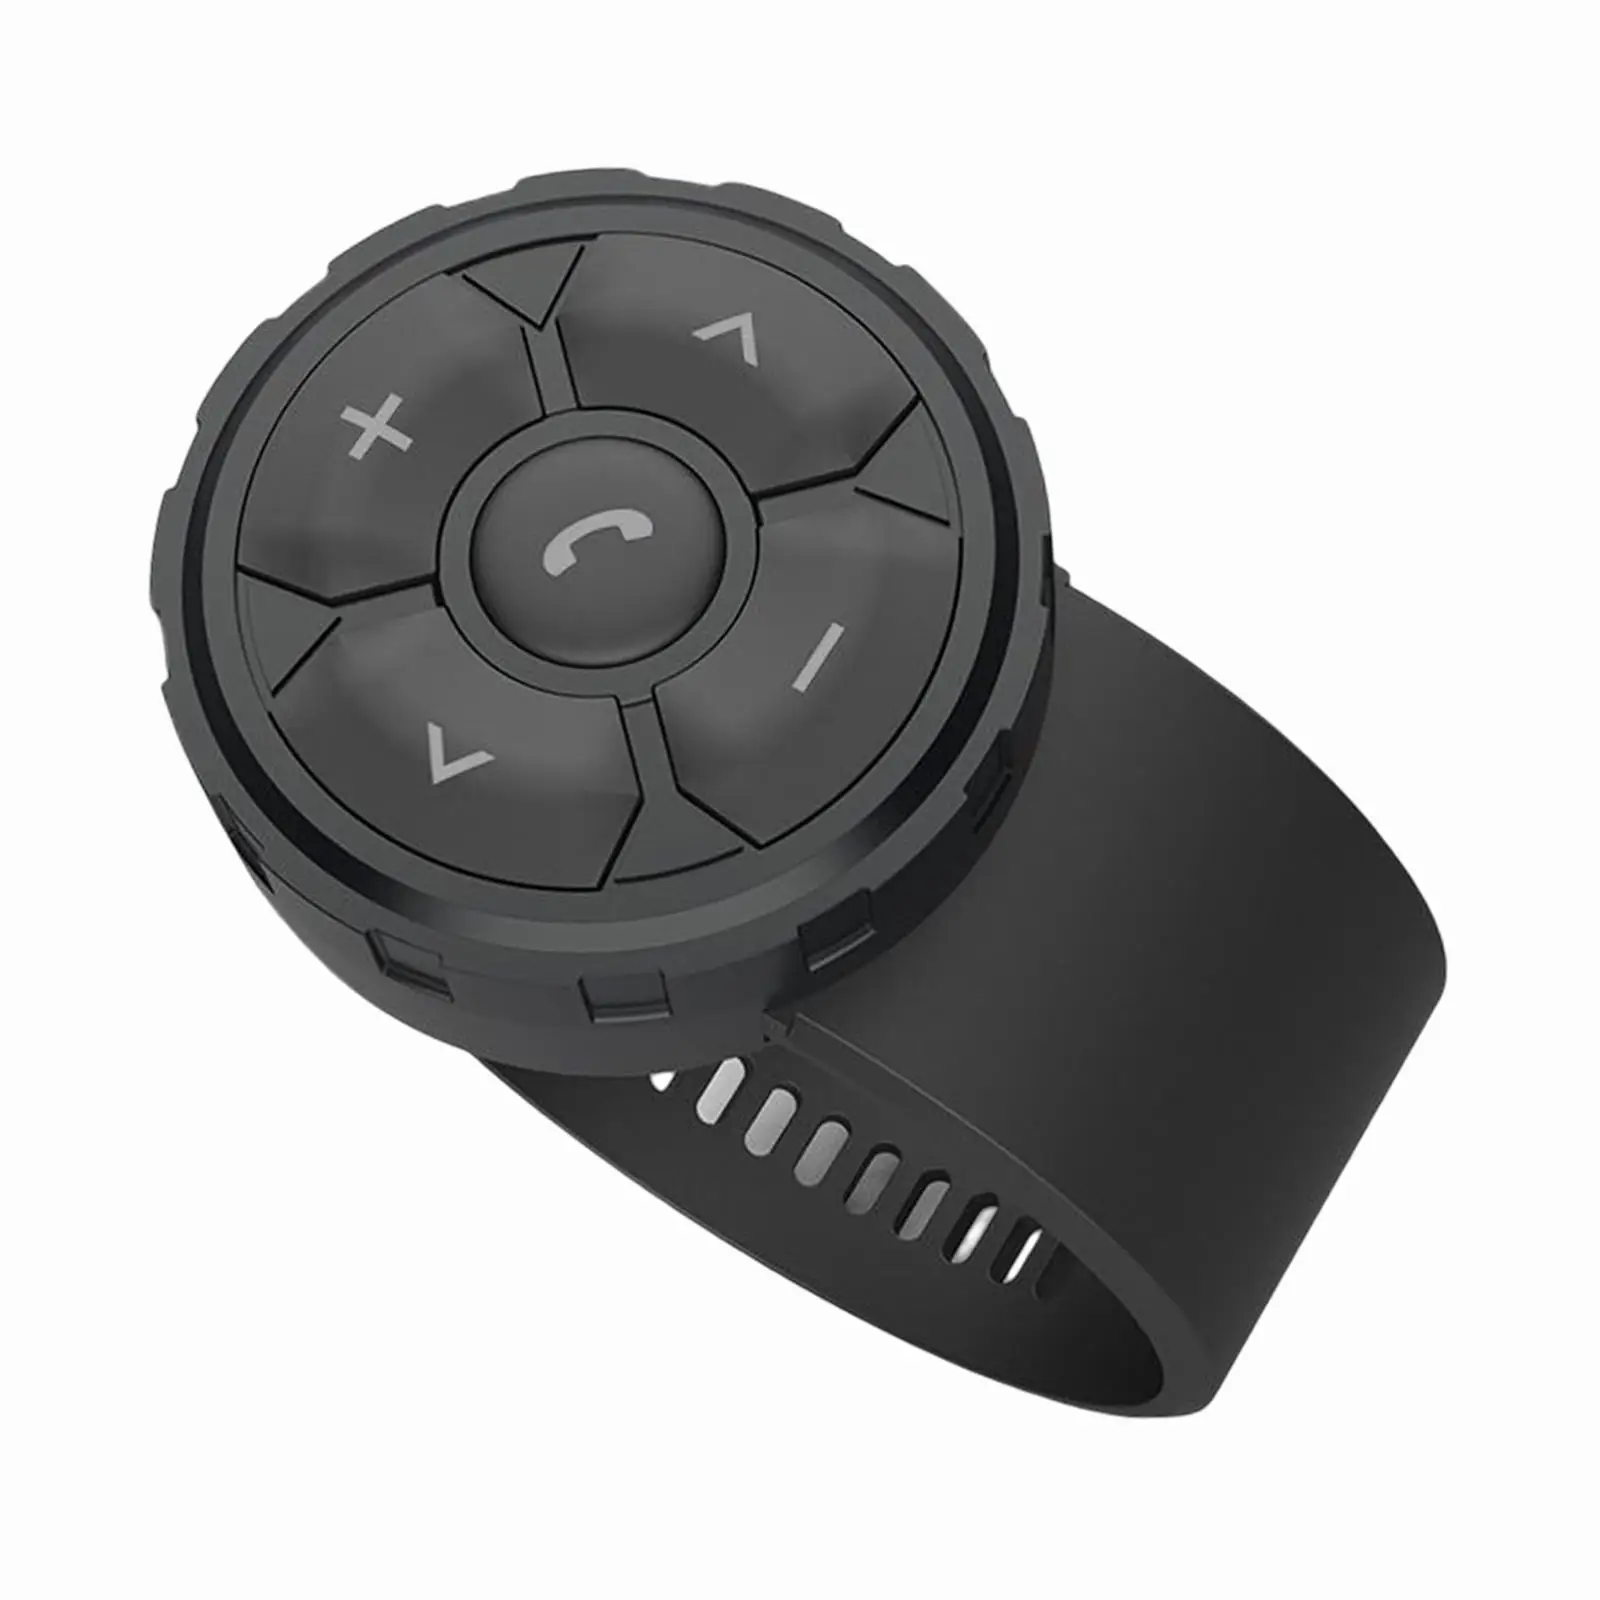 Steering Wheel Remote Control Waterproof Multi Use Player for Bike Motorbike